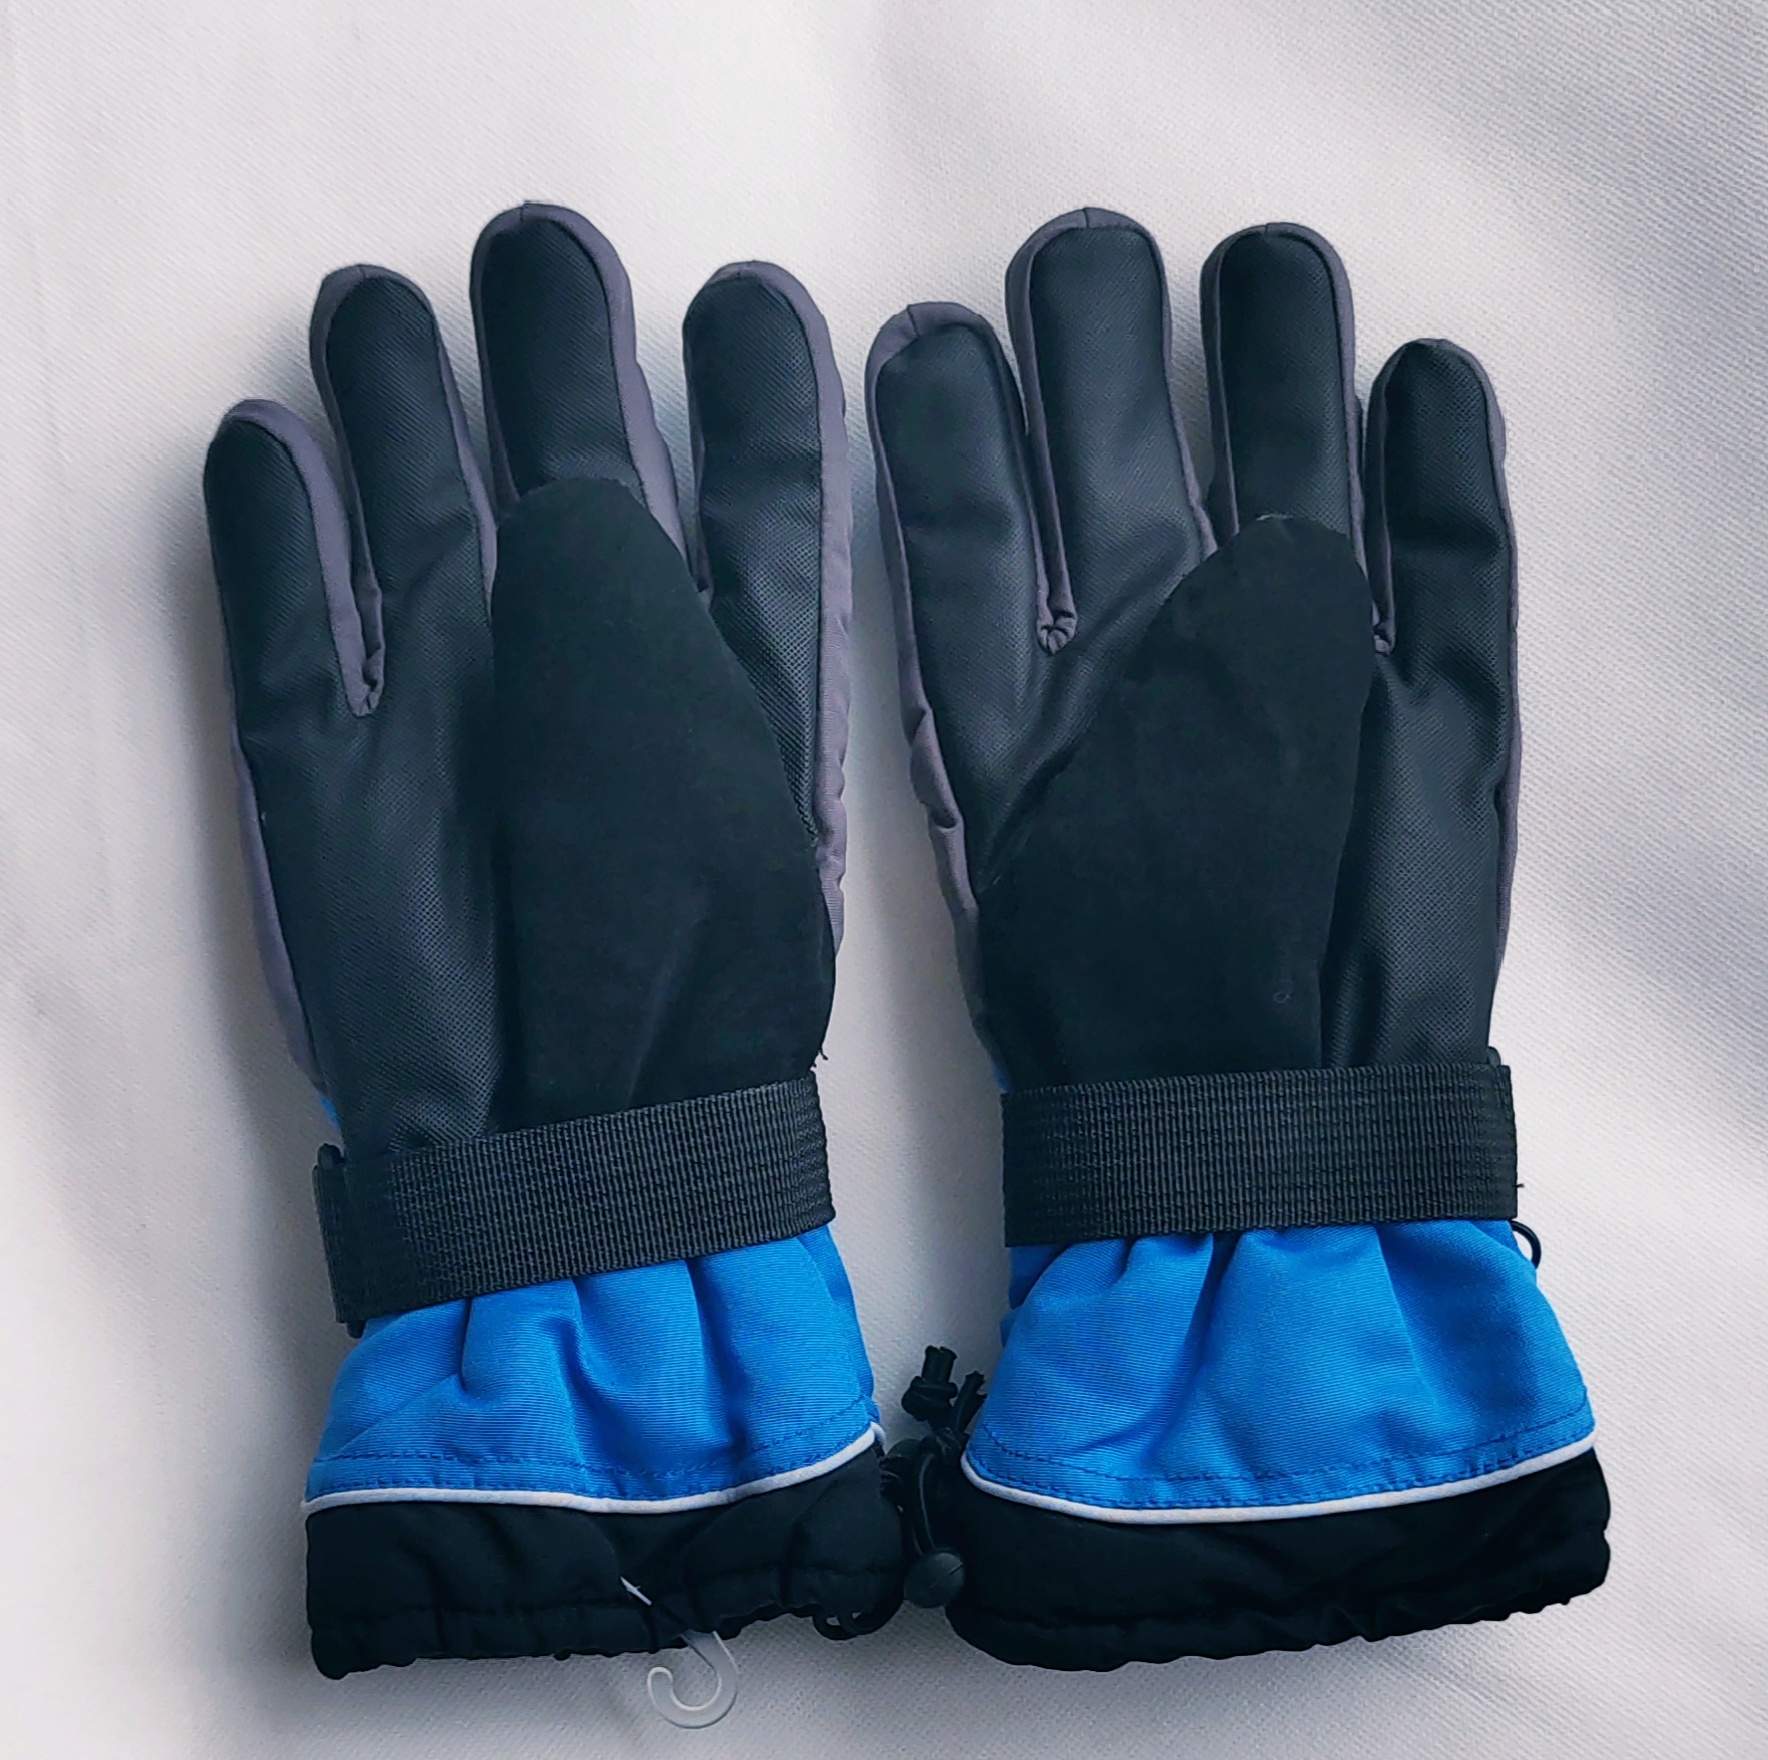 男士冬季运动户外滑雪手套 加厚抓绒触屏手套 骑行保暖防风防2